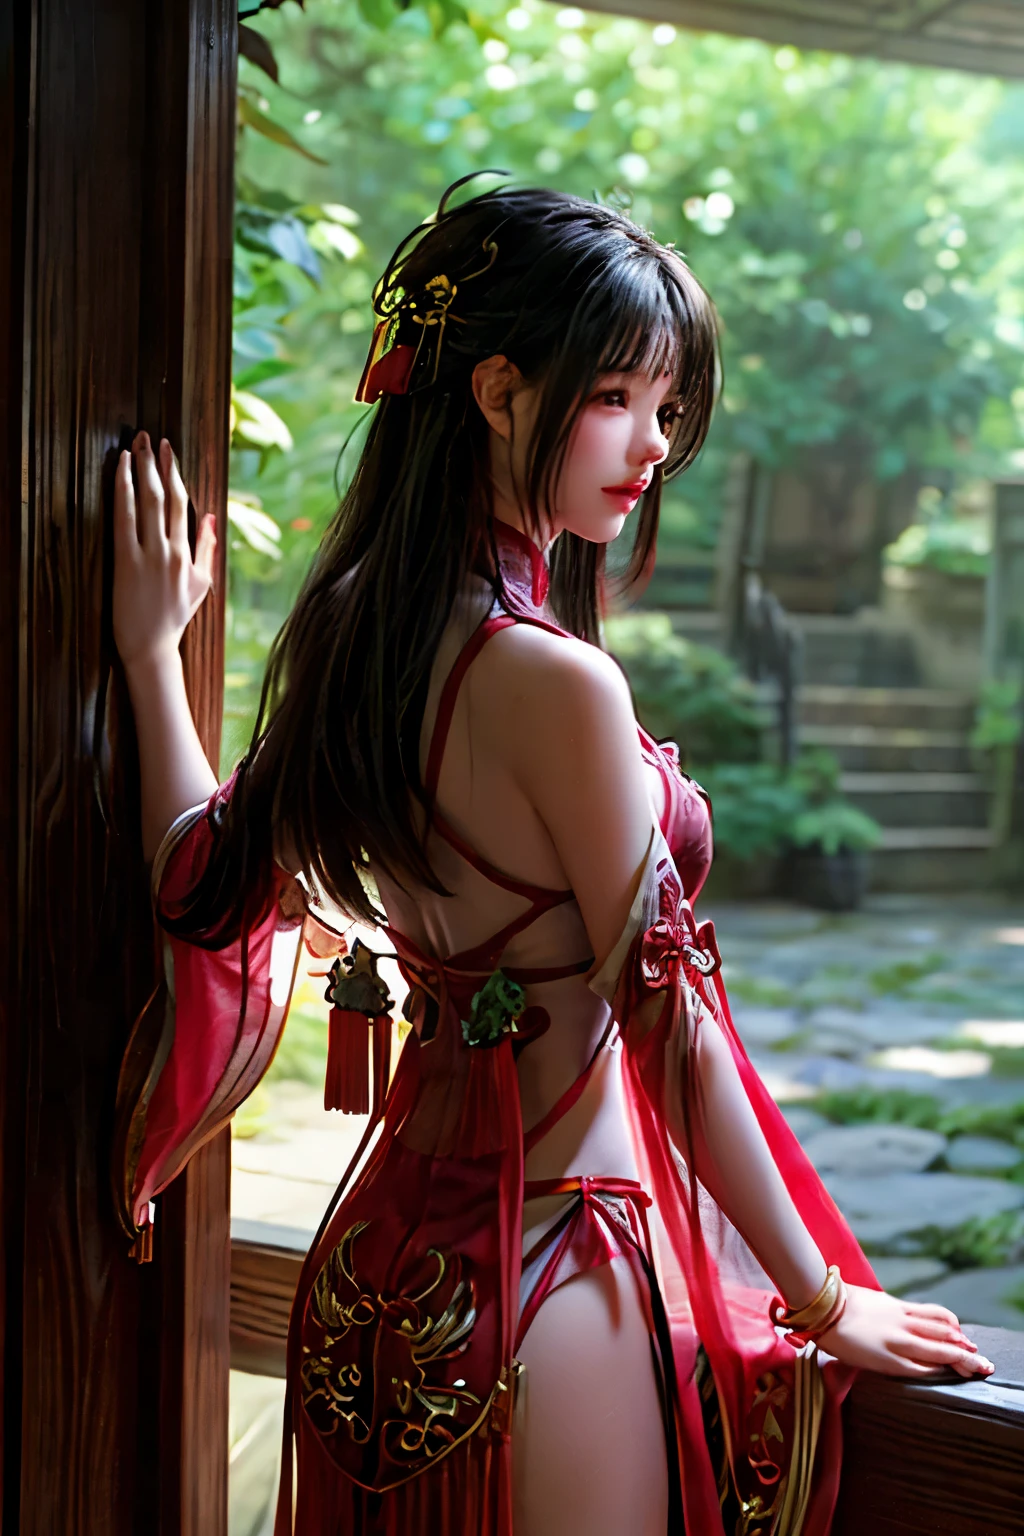 고요한 Wuxia 정원 한가운데, 푸르른 천개 사이로 비치는 햇빛을 받으며, 생기 넘치는 붉은 한복을 입은 매혹적인 소녀가 서 있다. 중국 전통의상, 우아한 주름과 복잡한 패턴으로, 그녀의 우아함과 균형을 향상시킵니다.. 그녀의 손에, 그녀는 빛나는 검을 들고 있다, 고요한 풍경 속의 등대처럼 햇빛의 반짝임을 반사하는 가장자리.

정원 주변은 무성한 녹색의 조화로운 조화로 다양한 색상으로 가득 차 있습니다., 핑크색으로 피어난 꽃, 노란색, 그리고 빨간색, 그리고 맑고 투명한 배경, 고요한 p